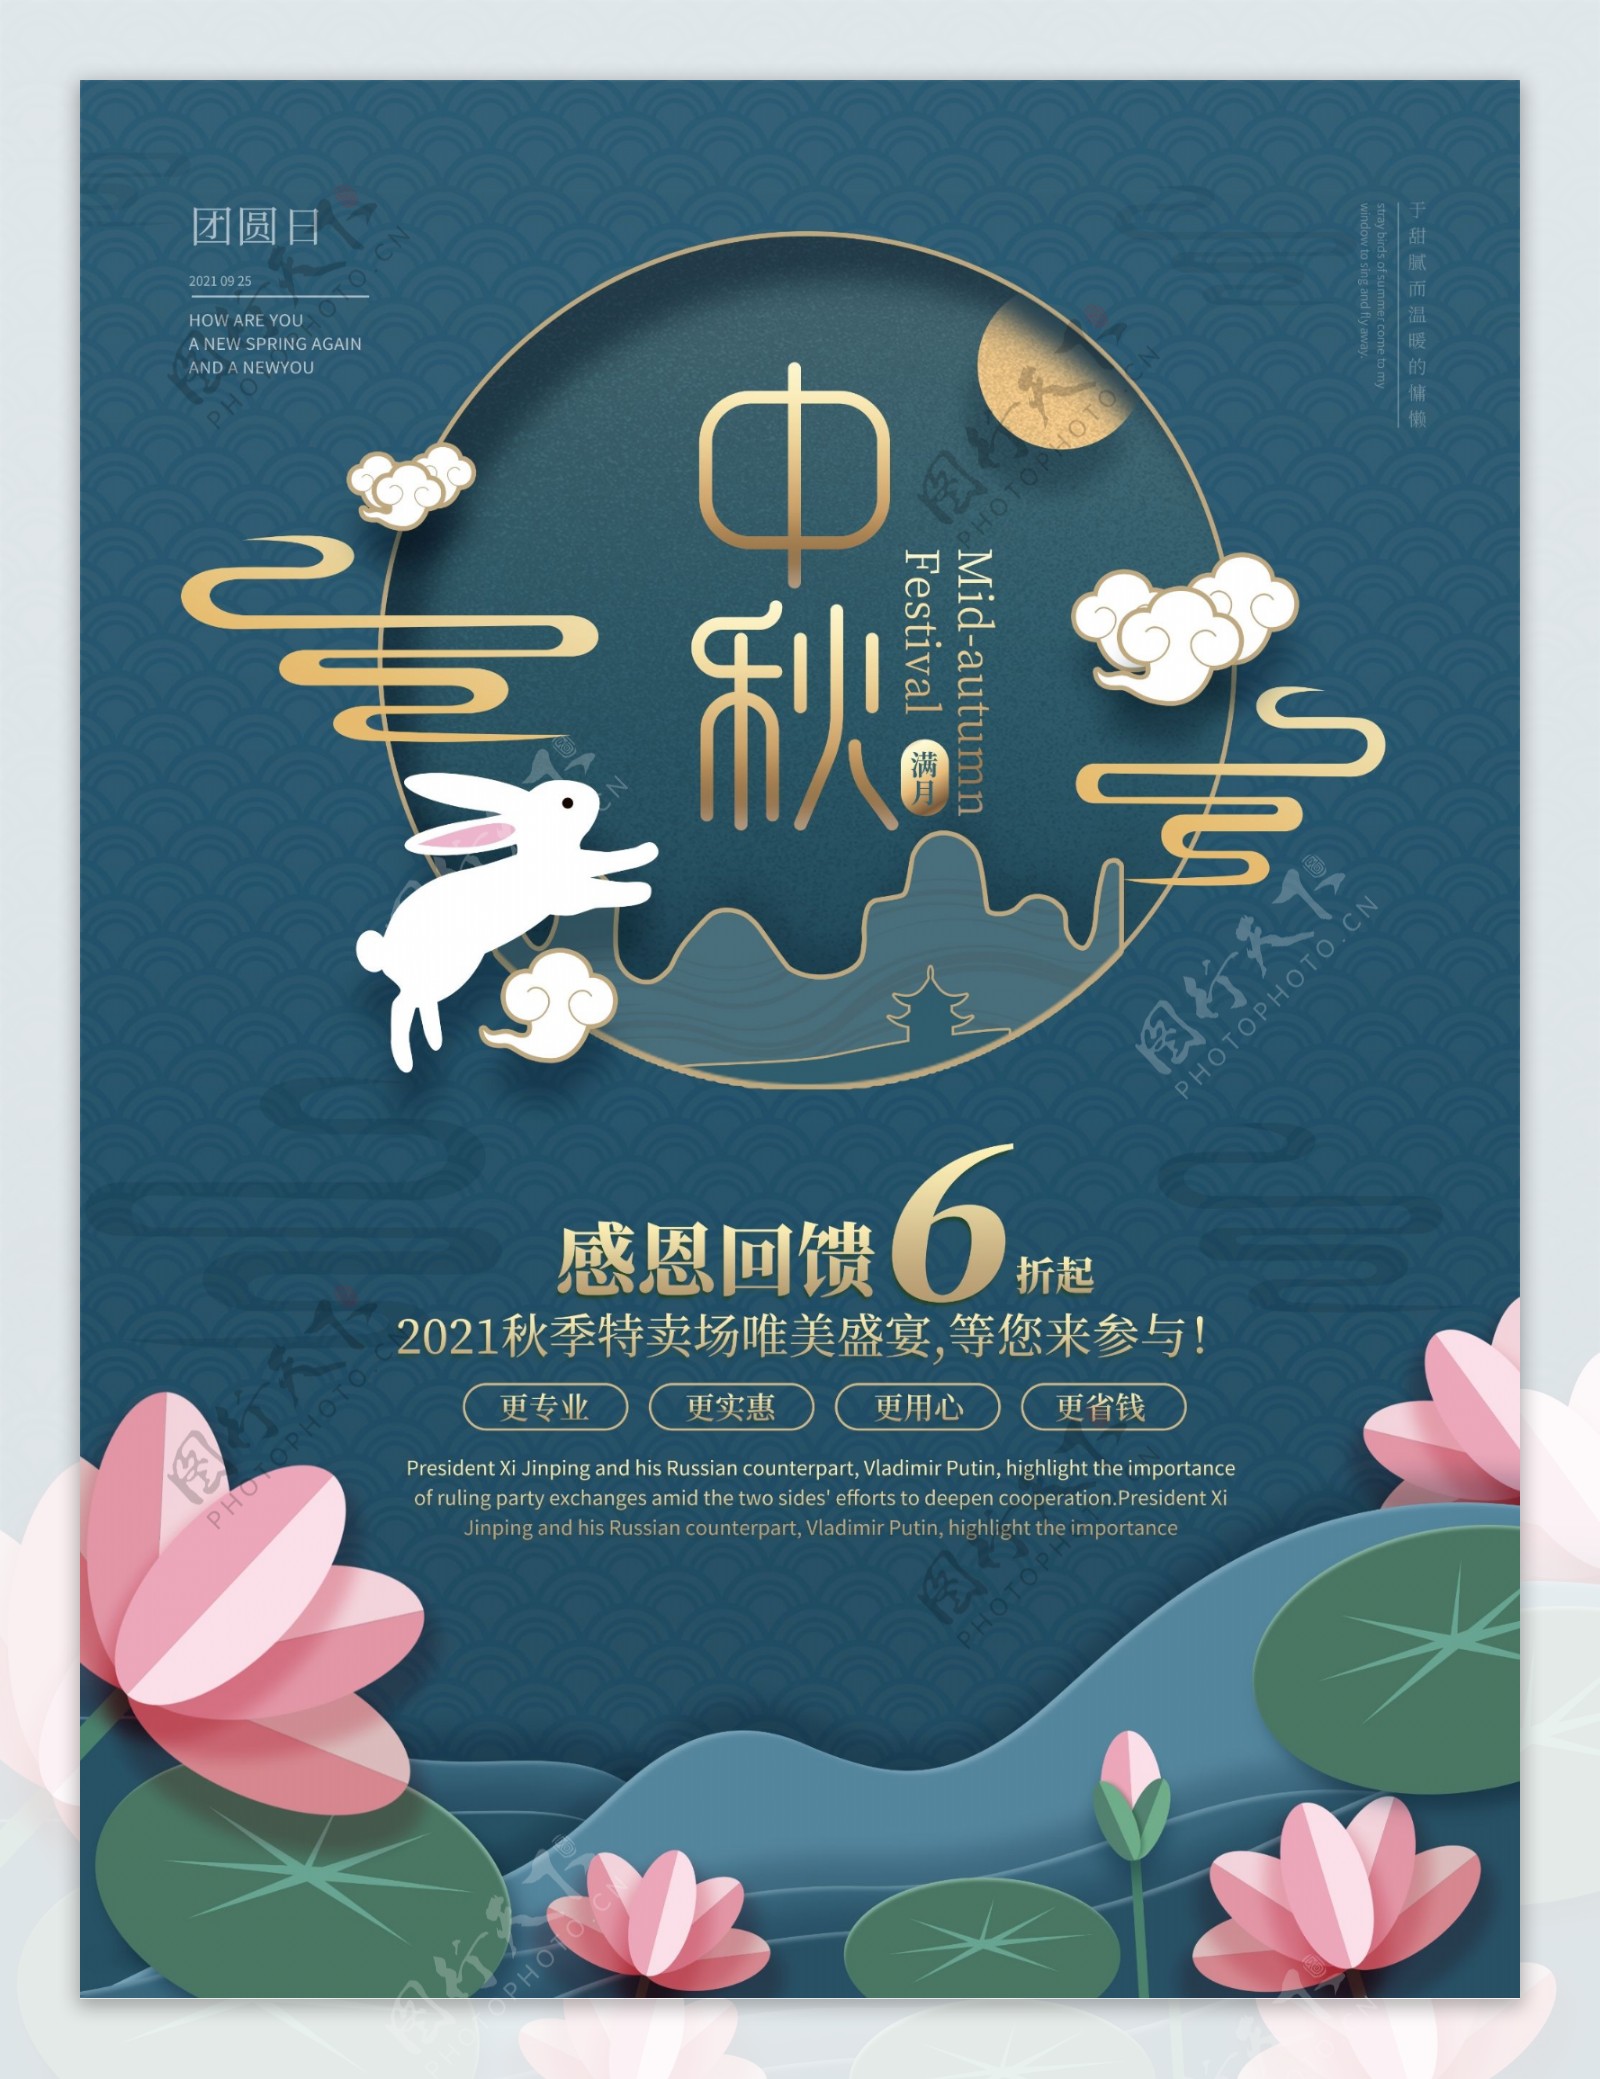 剪纸风中秋节节日海报